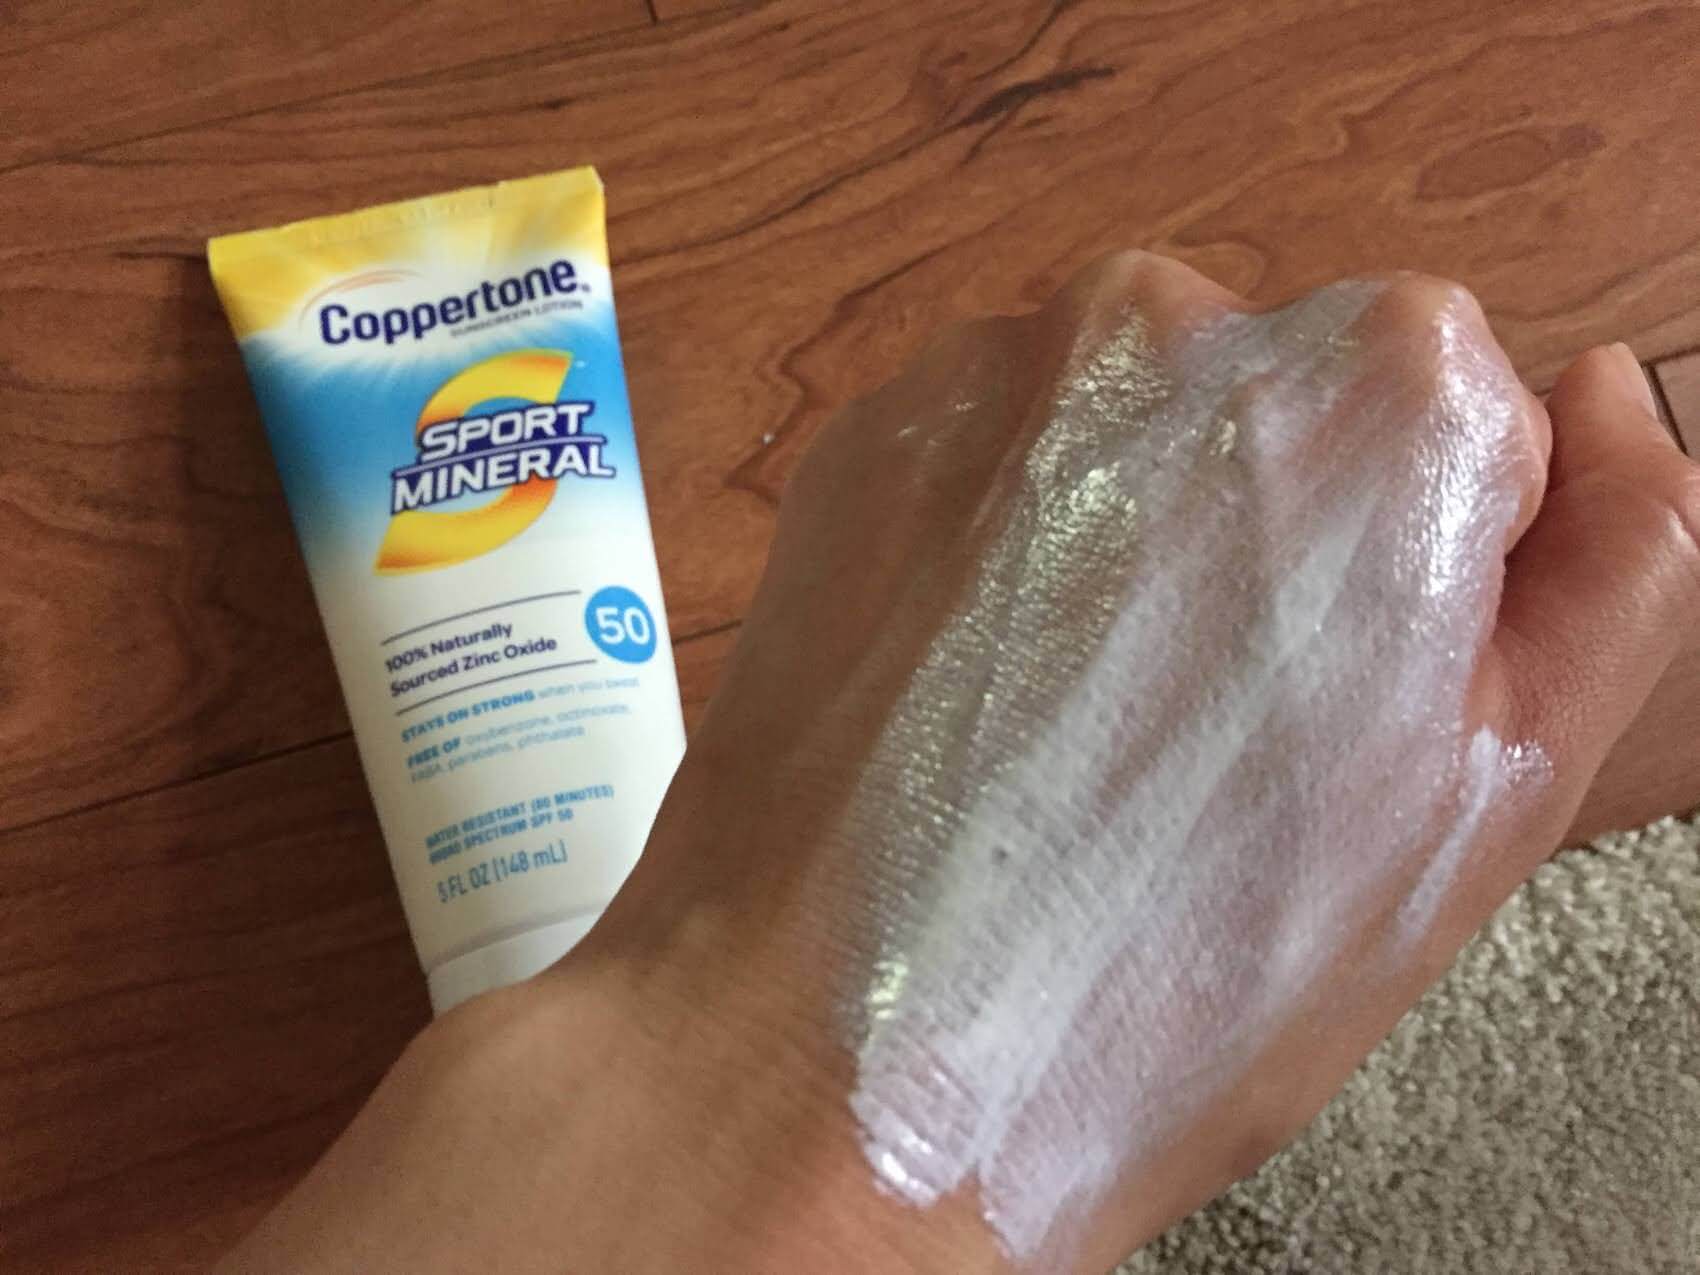 Coppertone Sport Mineral Sunscreen SPF 50 Lotion rubbing into skin